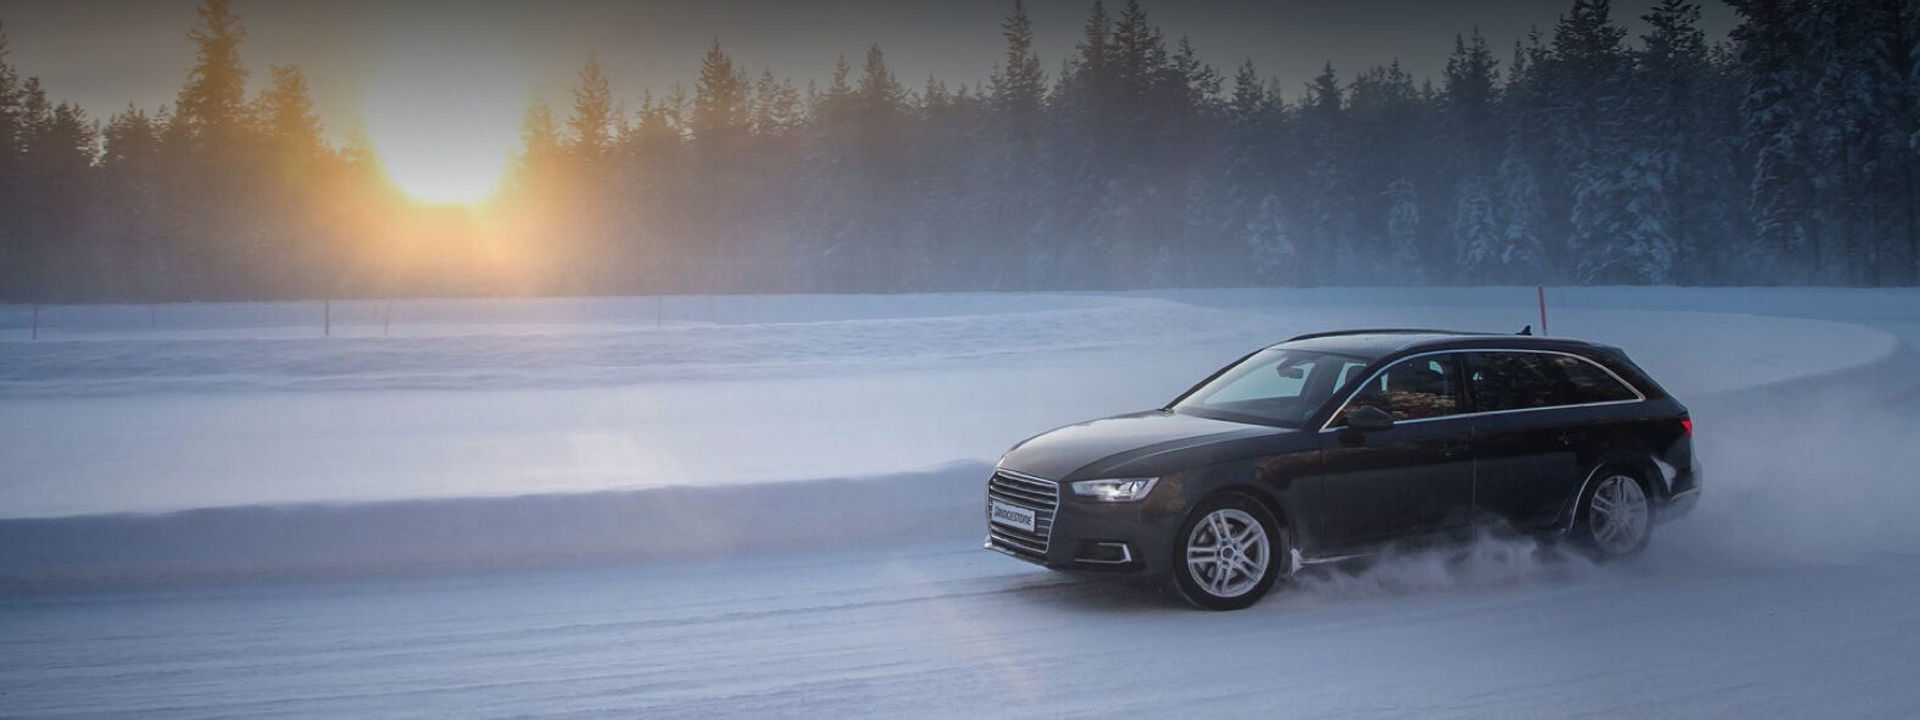 Erdei havas úton egy hóbucka mellett bekanyarodó, Blizzak LM005 téli abronccsal felszerelt fekete Audi. 